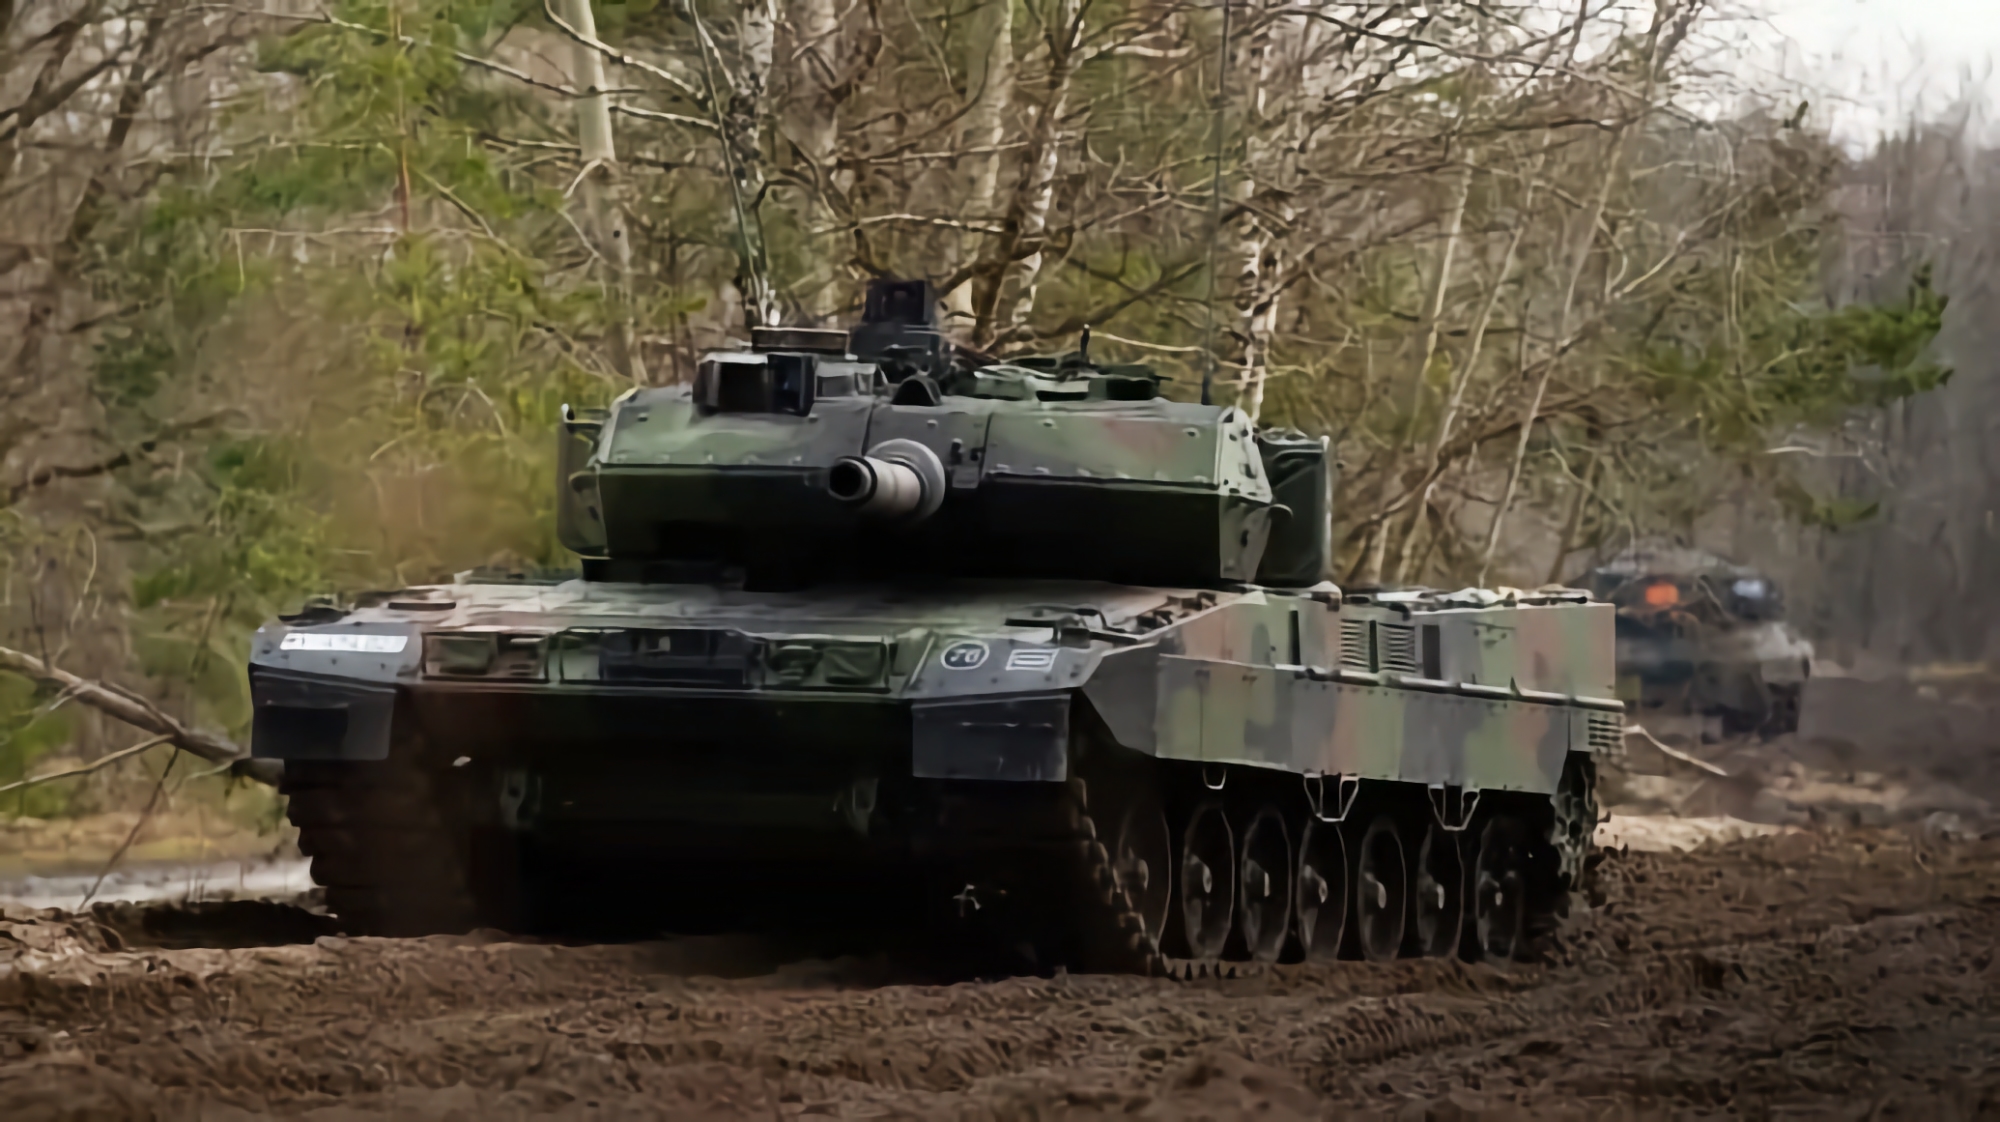 De AFU liet zien hoe ze de inzittenden beschoten met een Duitse Leopard 2A6 tank